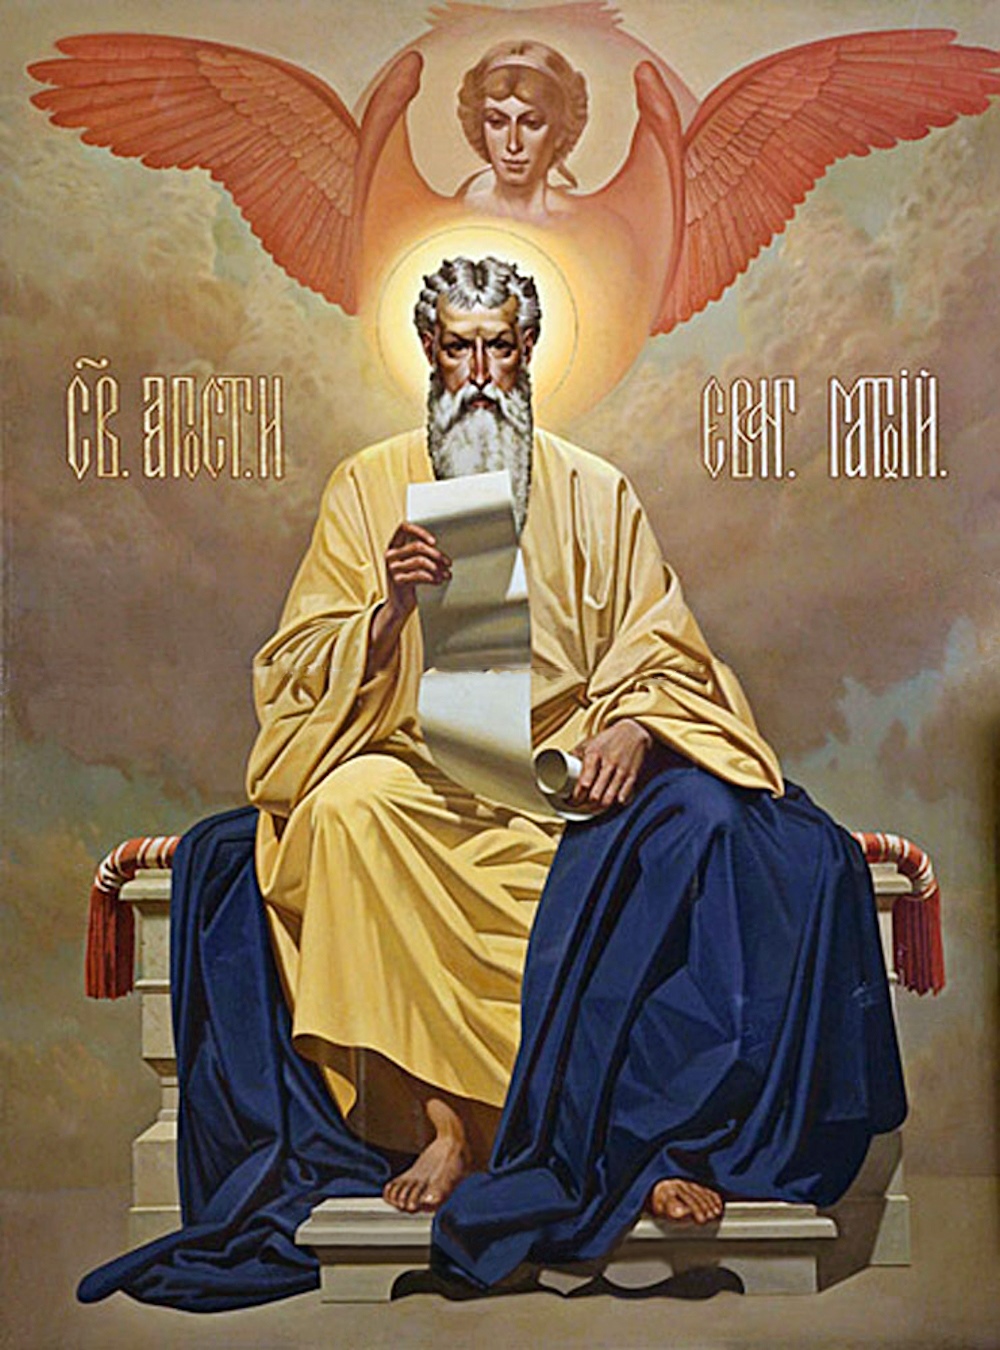 00 Aleksandr Sytov. Apostle St Matthew (étude). 1995